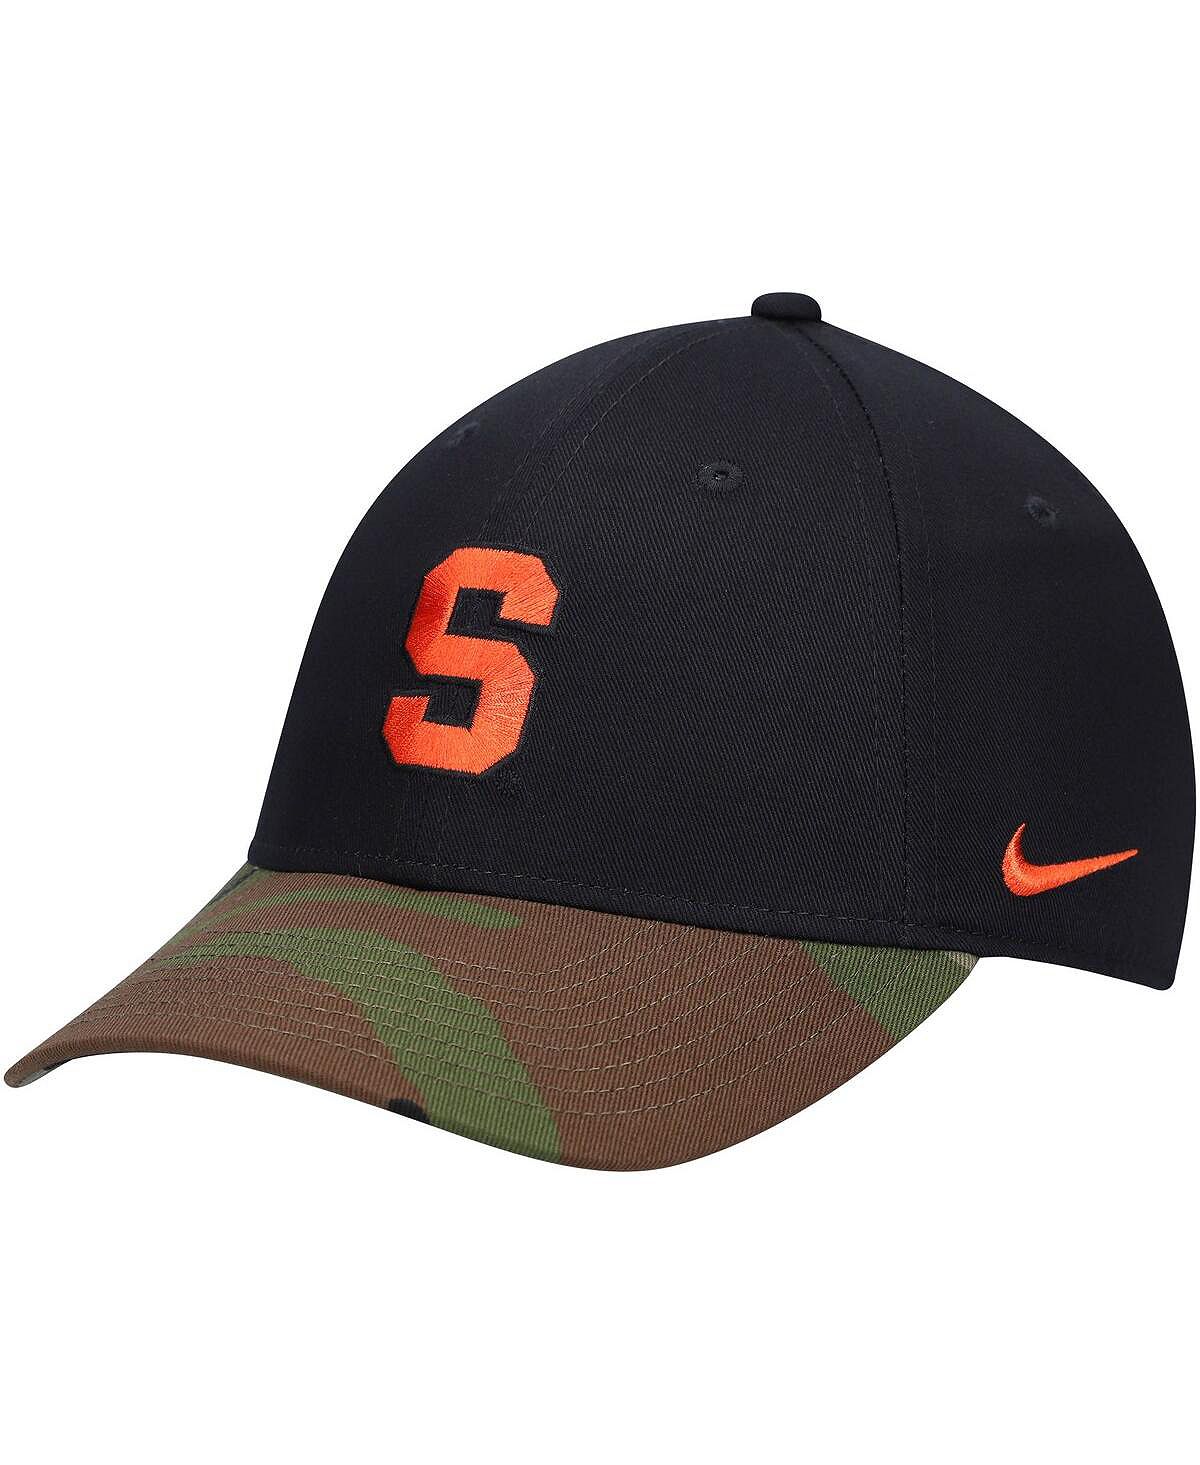 Мужская регулируемая шляпа в стиле милитари Legacy91 черного цвета с камуфляжным оранжевым сиракузским окрасом Nike